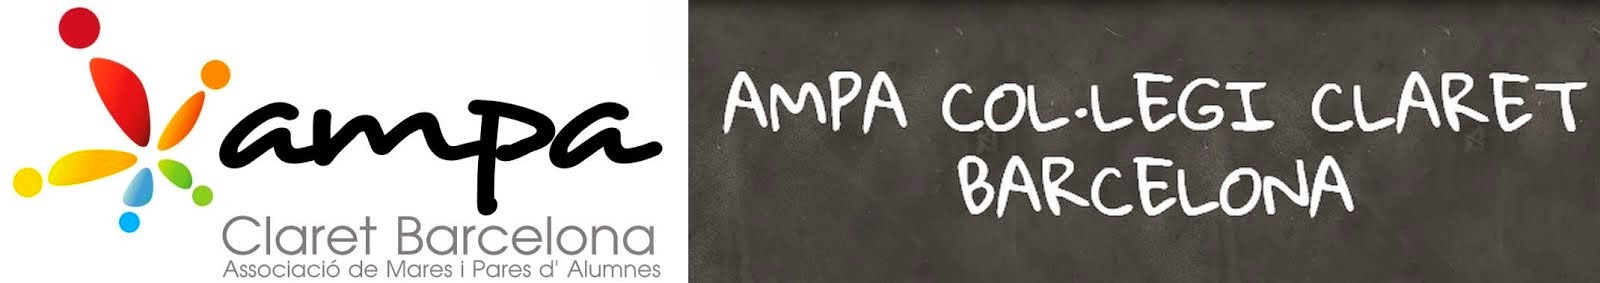 AMPA Col·legi Claret Barcelona